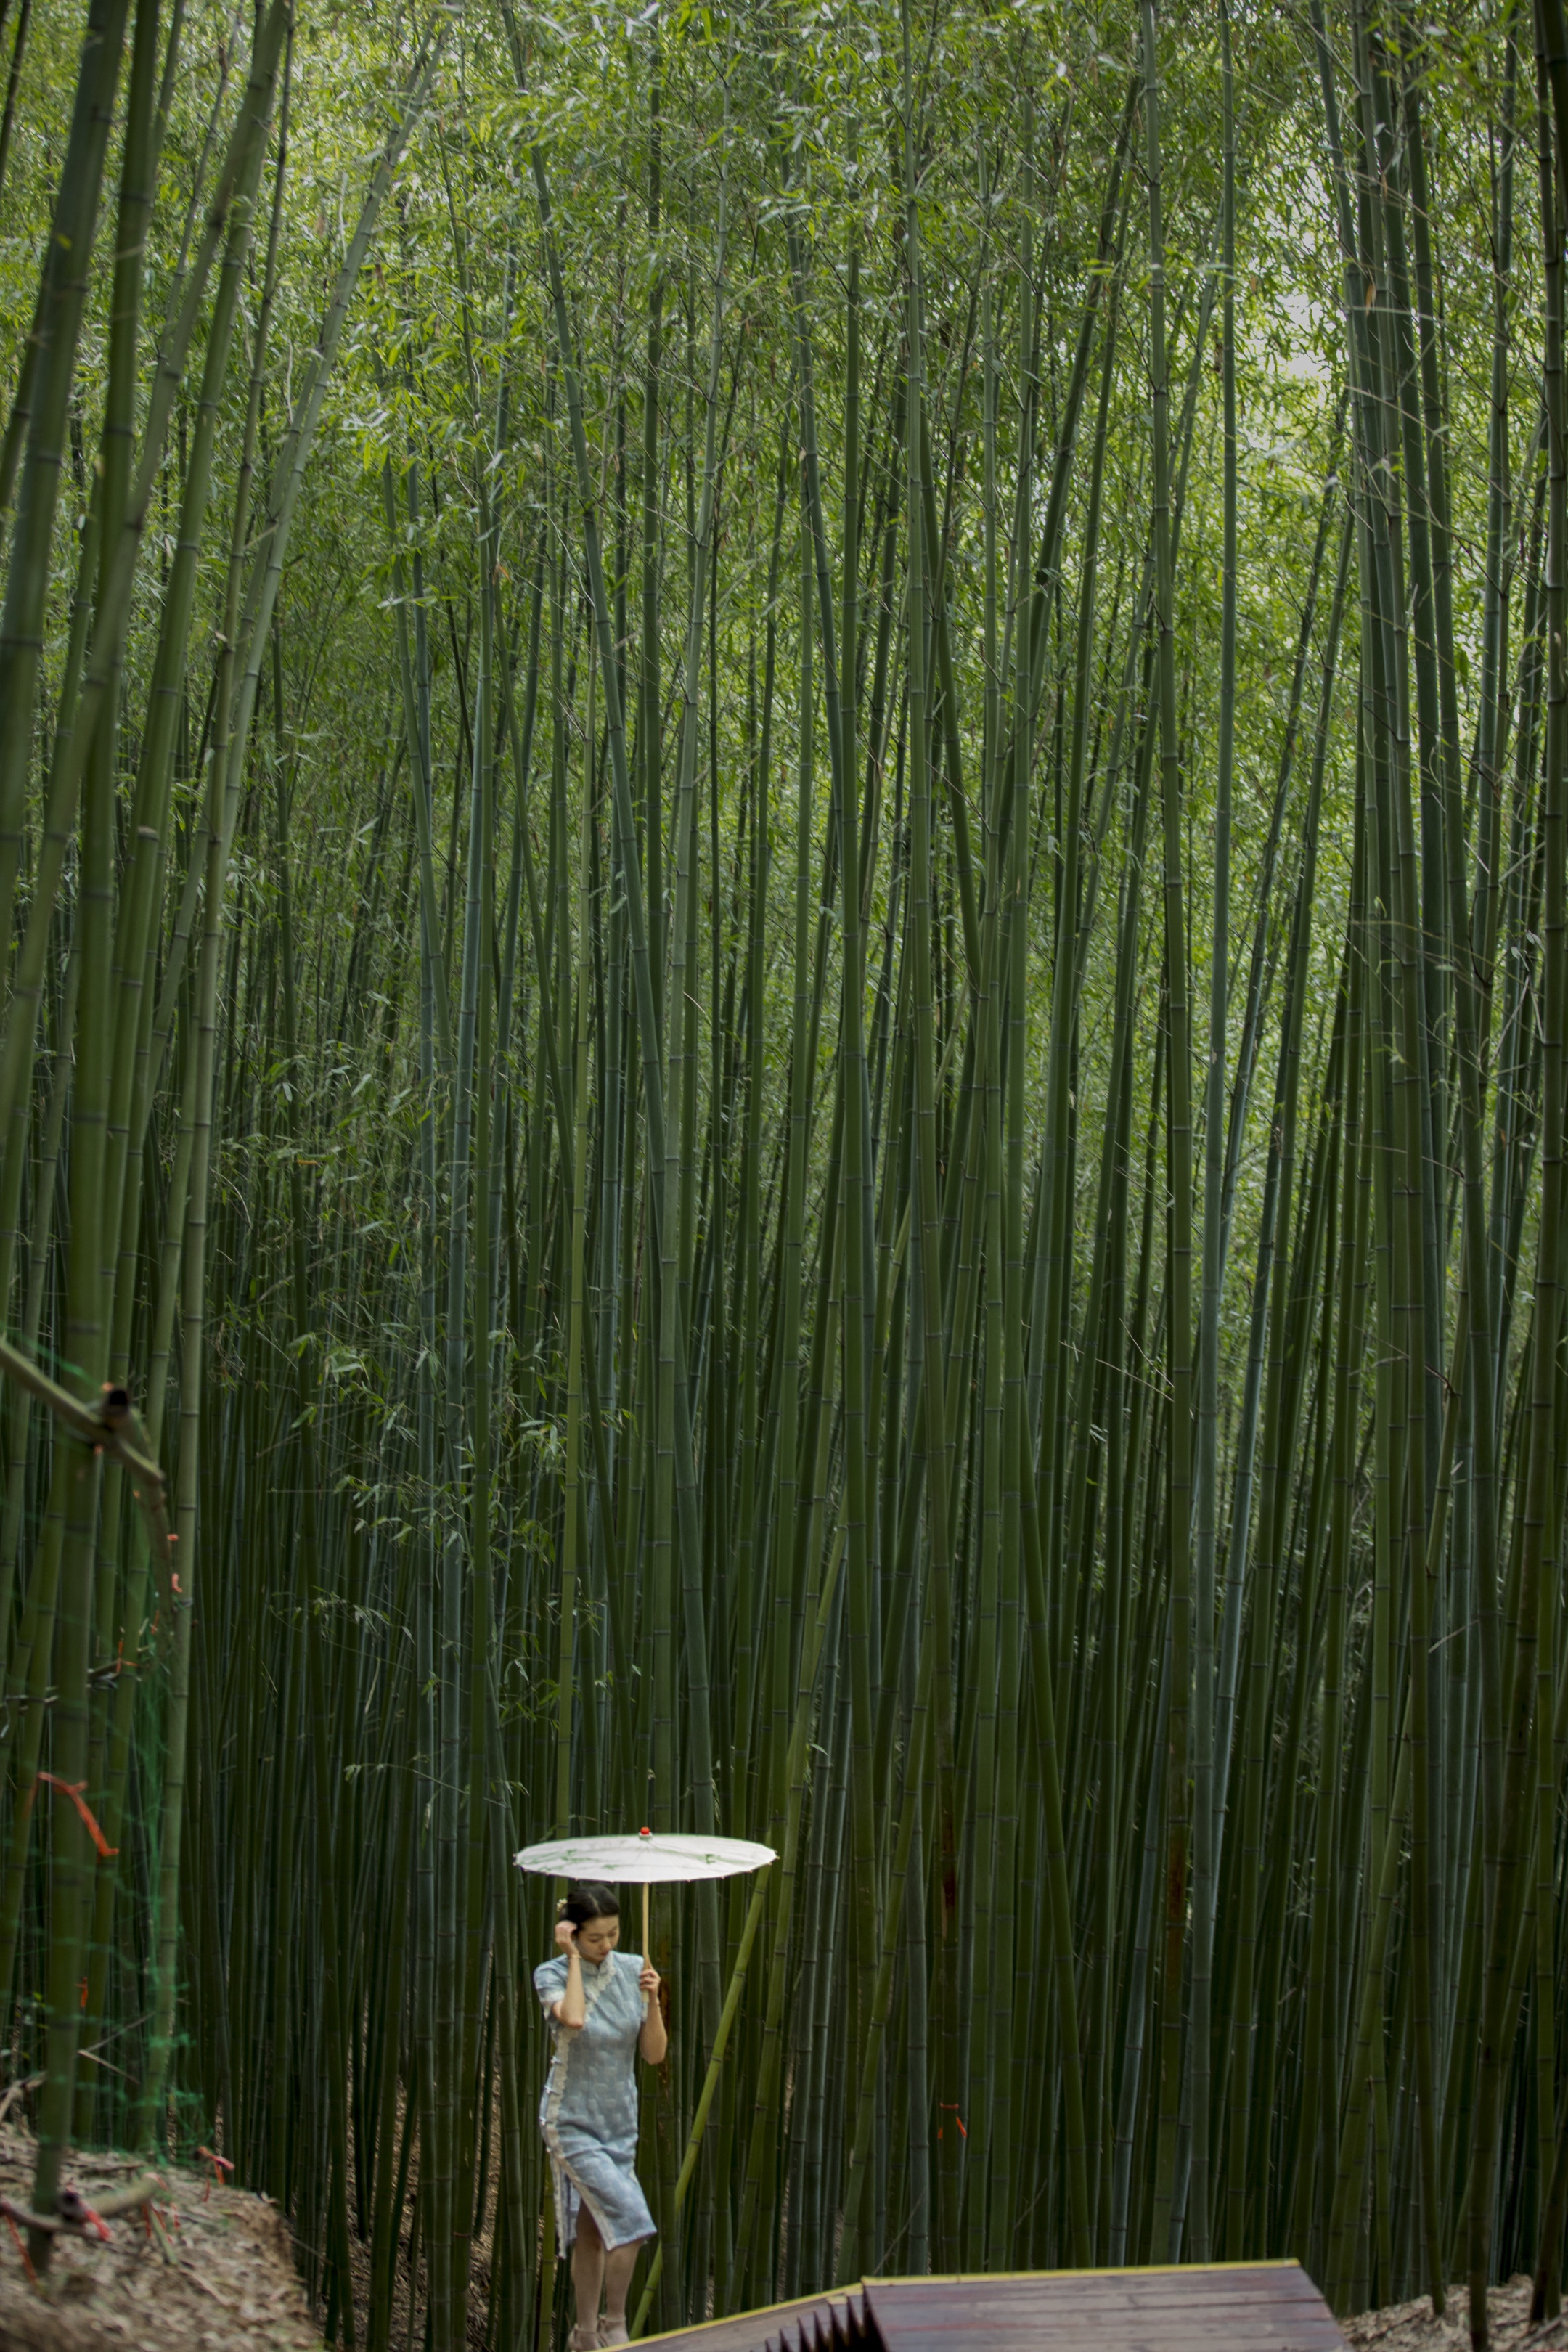 竹子风景图片手机壁纸图片